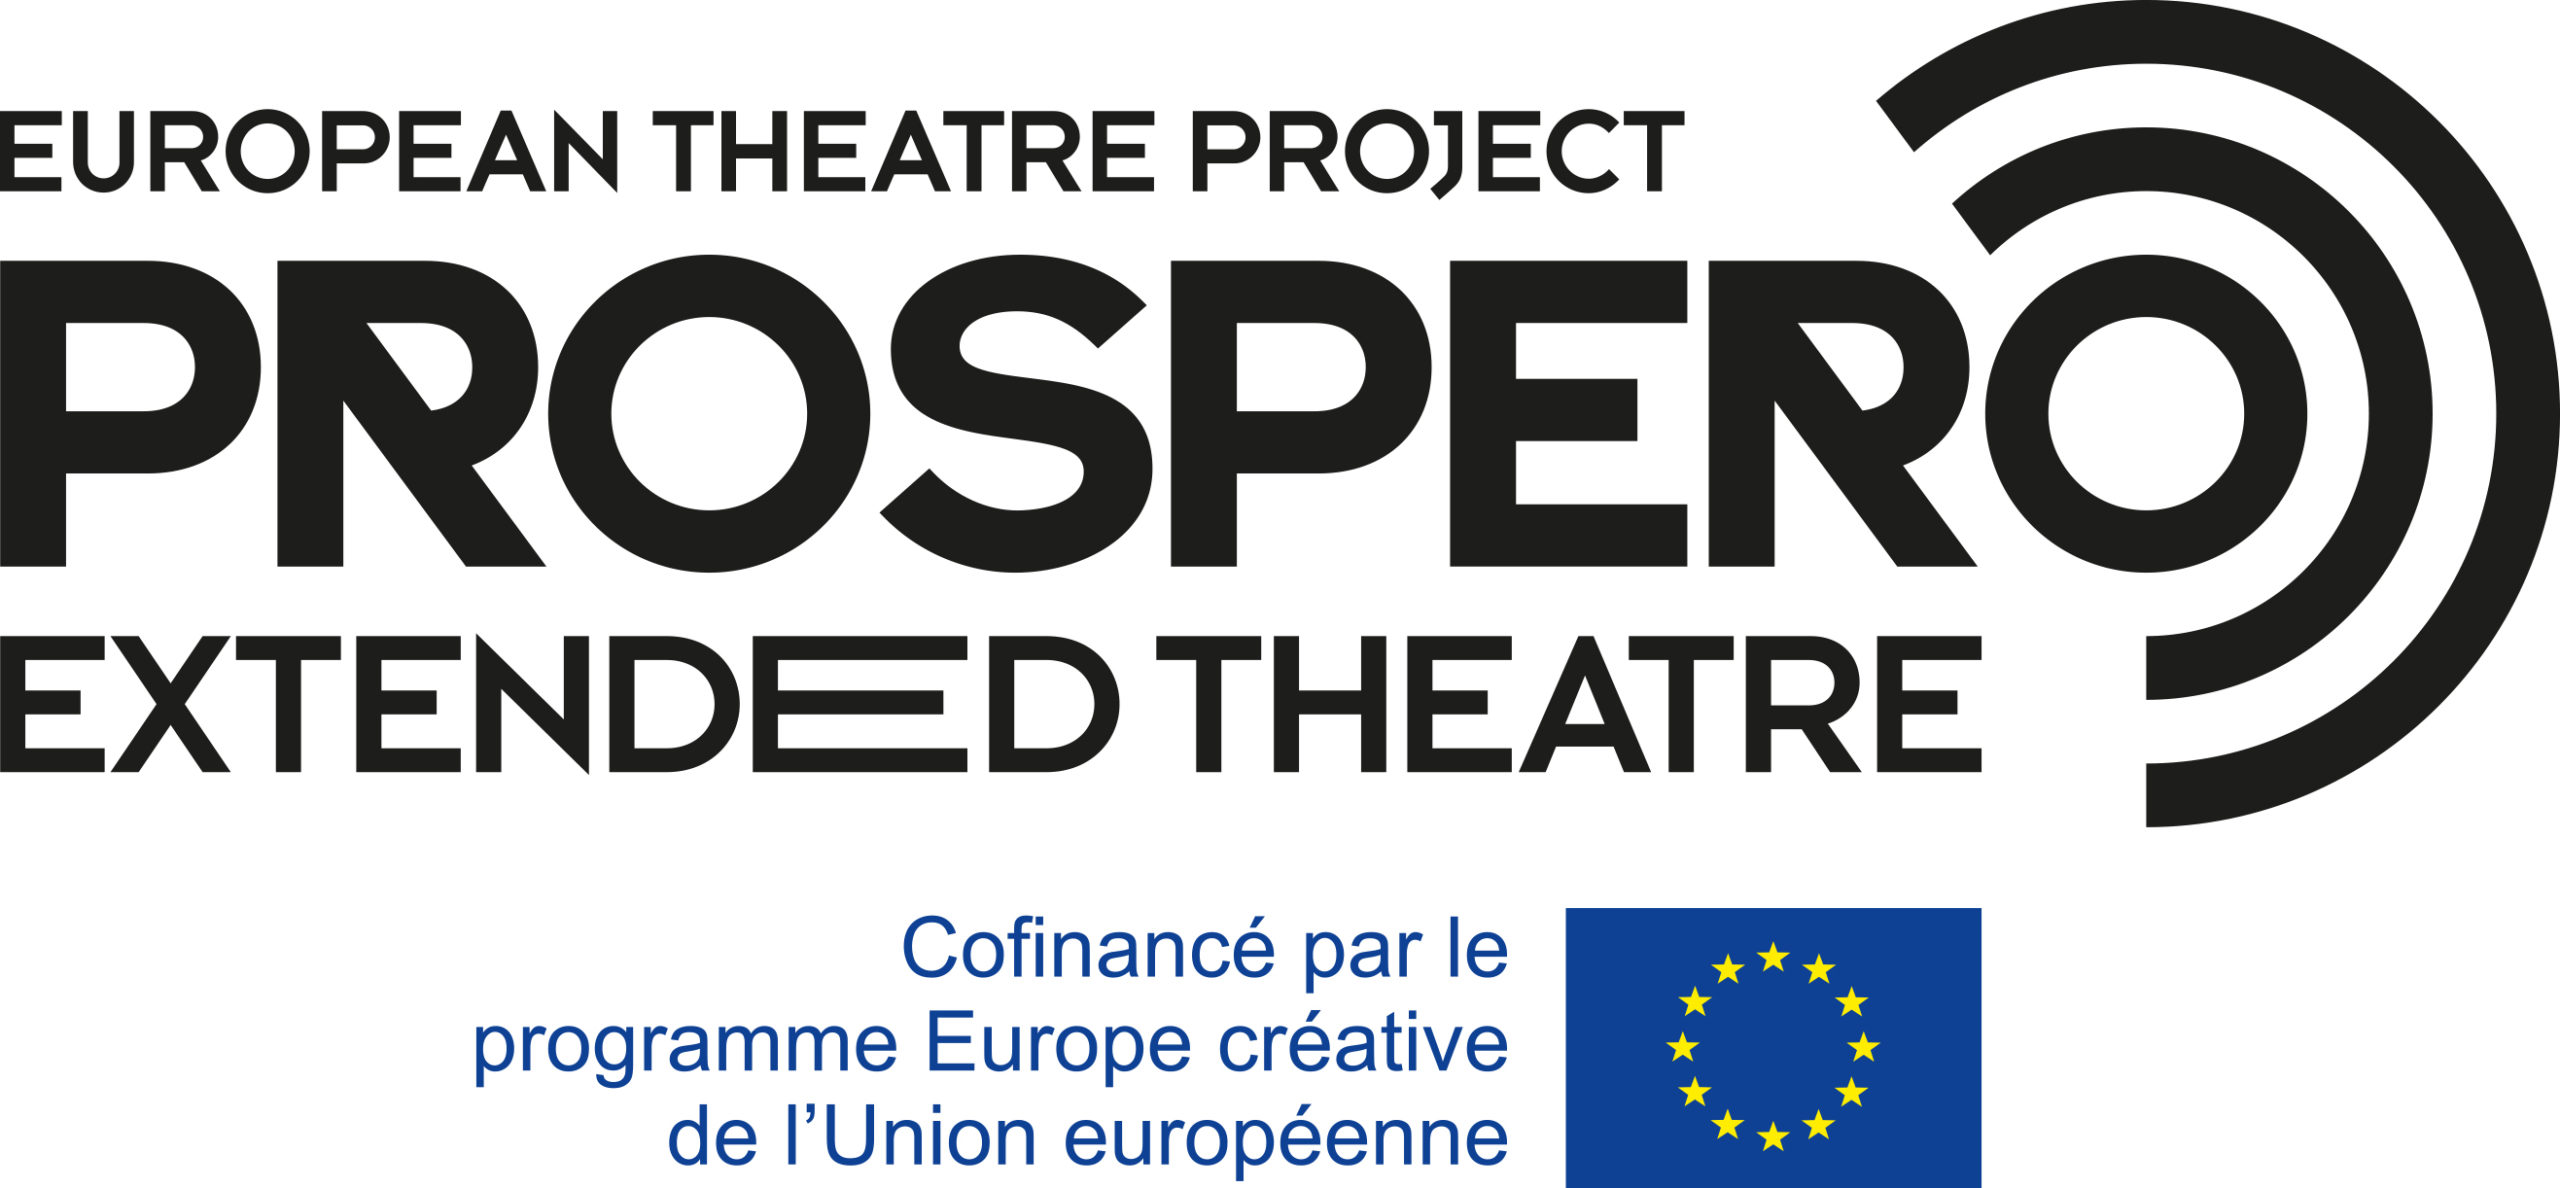 Prospero : 9 théâtres de 9 pays européens créent une plateforme dédiée à la diffusion de pièces de théâtre